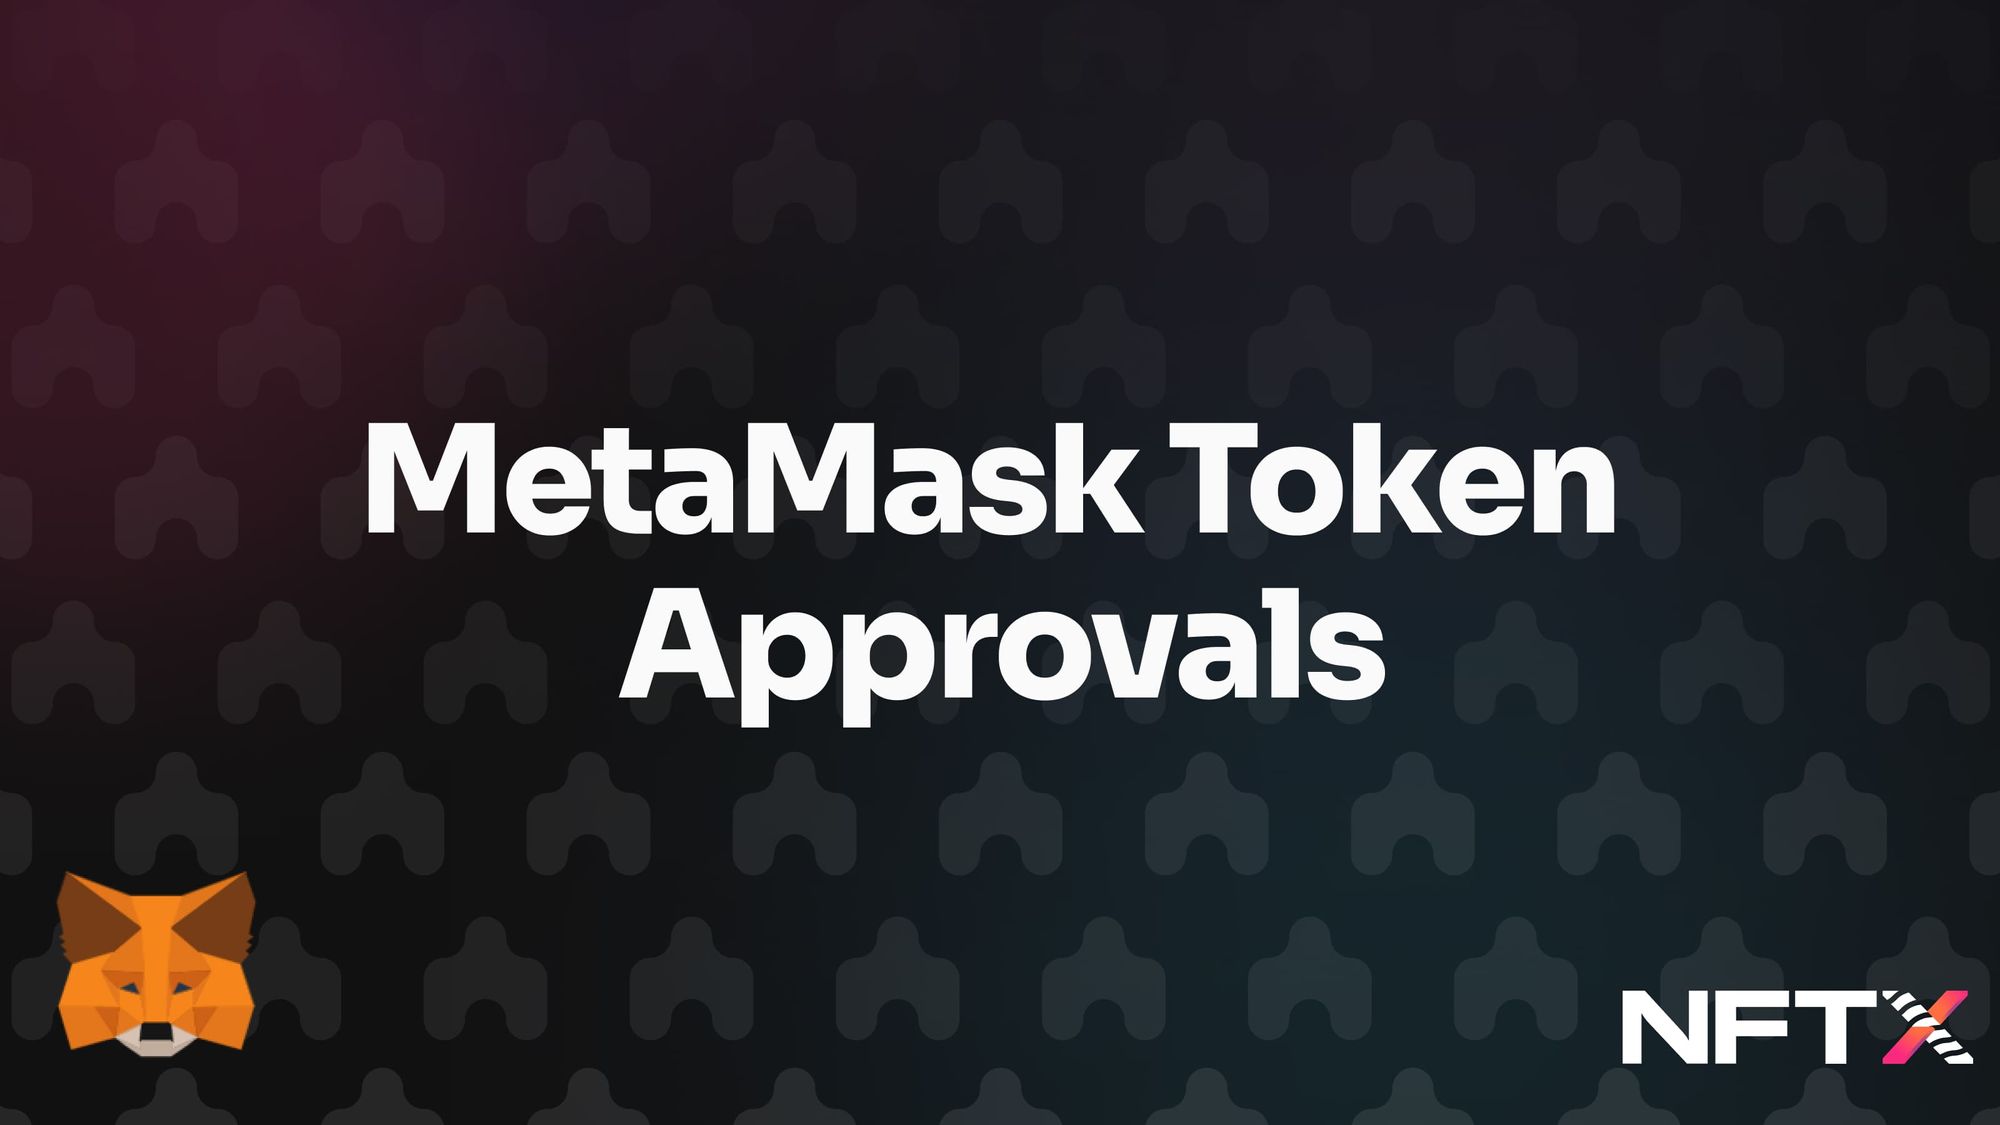 Metamask improves token approval UX